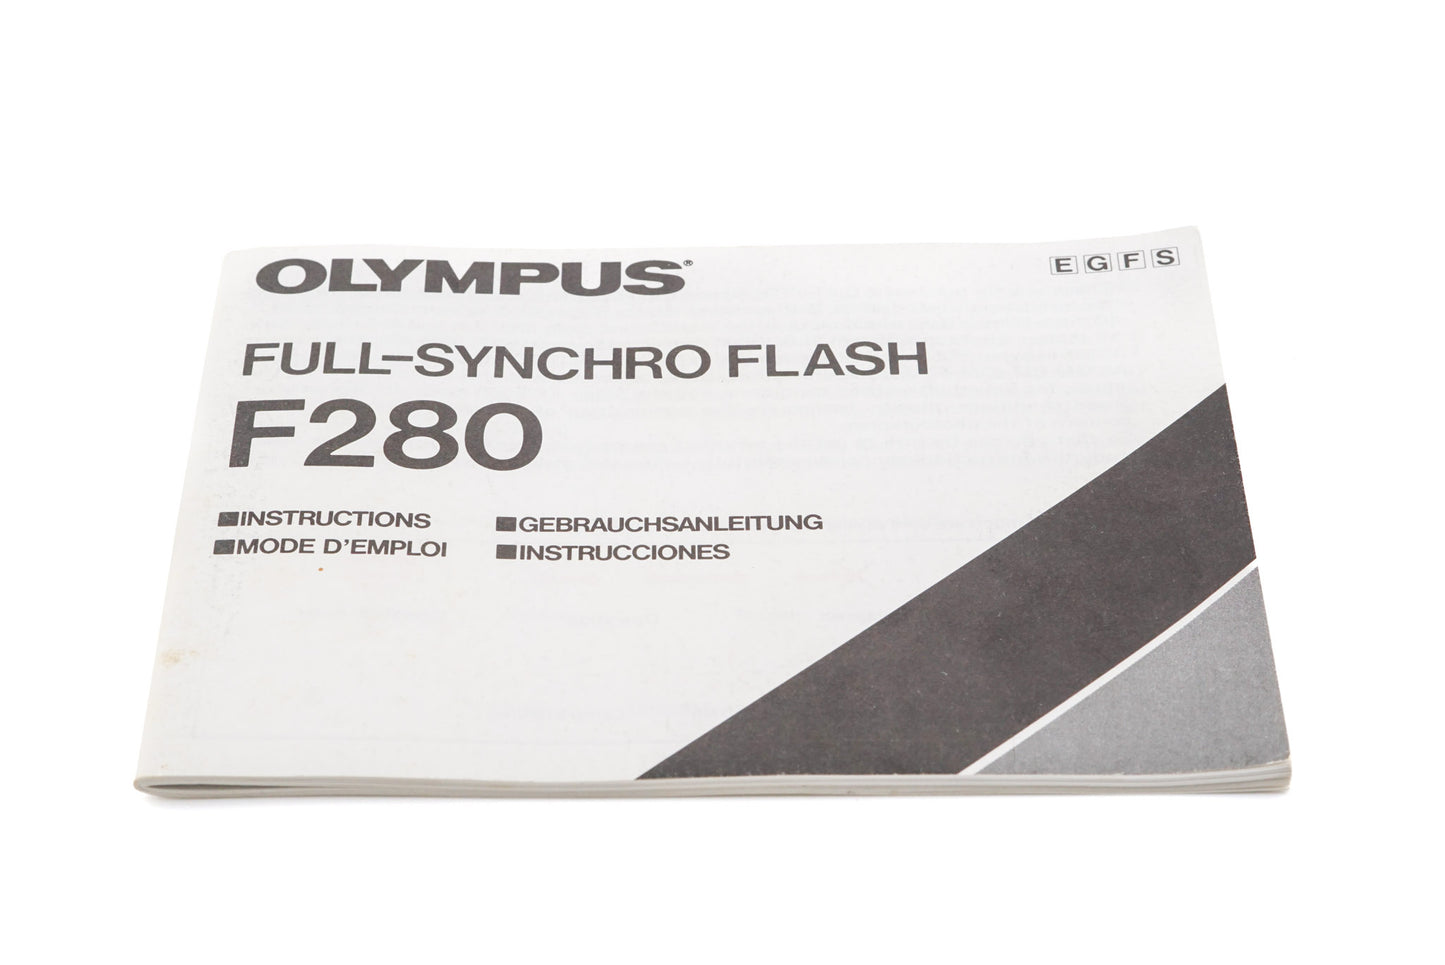 Olympus F280 Full-Synchro Flash Instructions